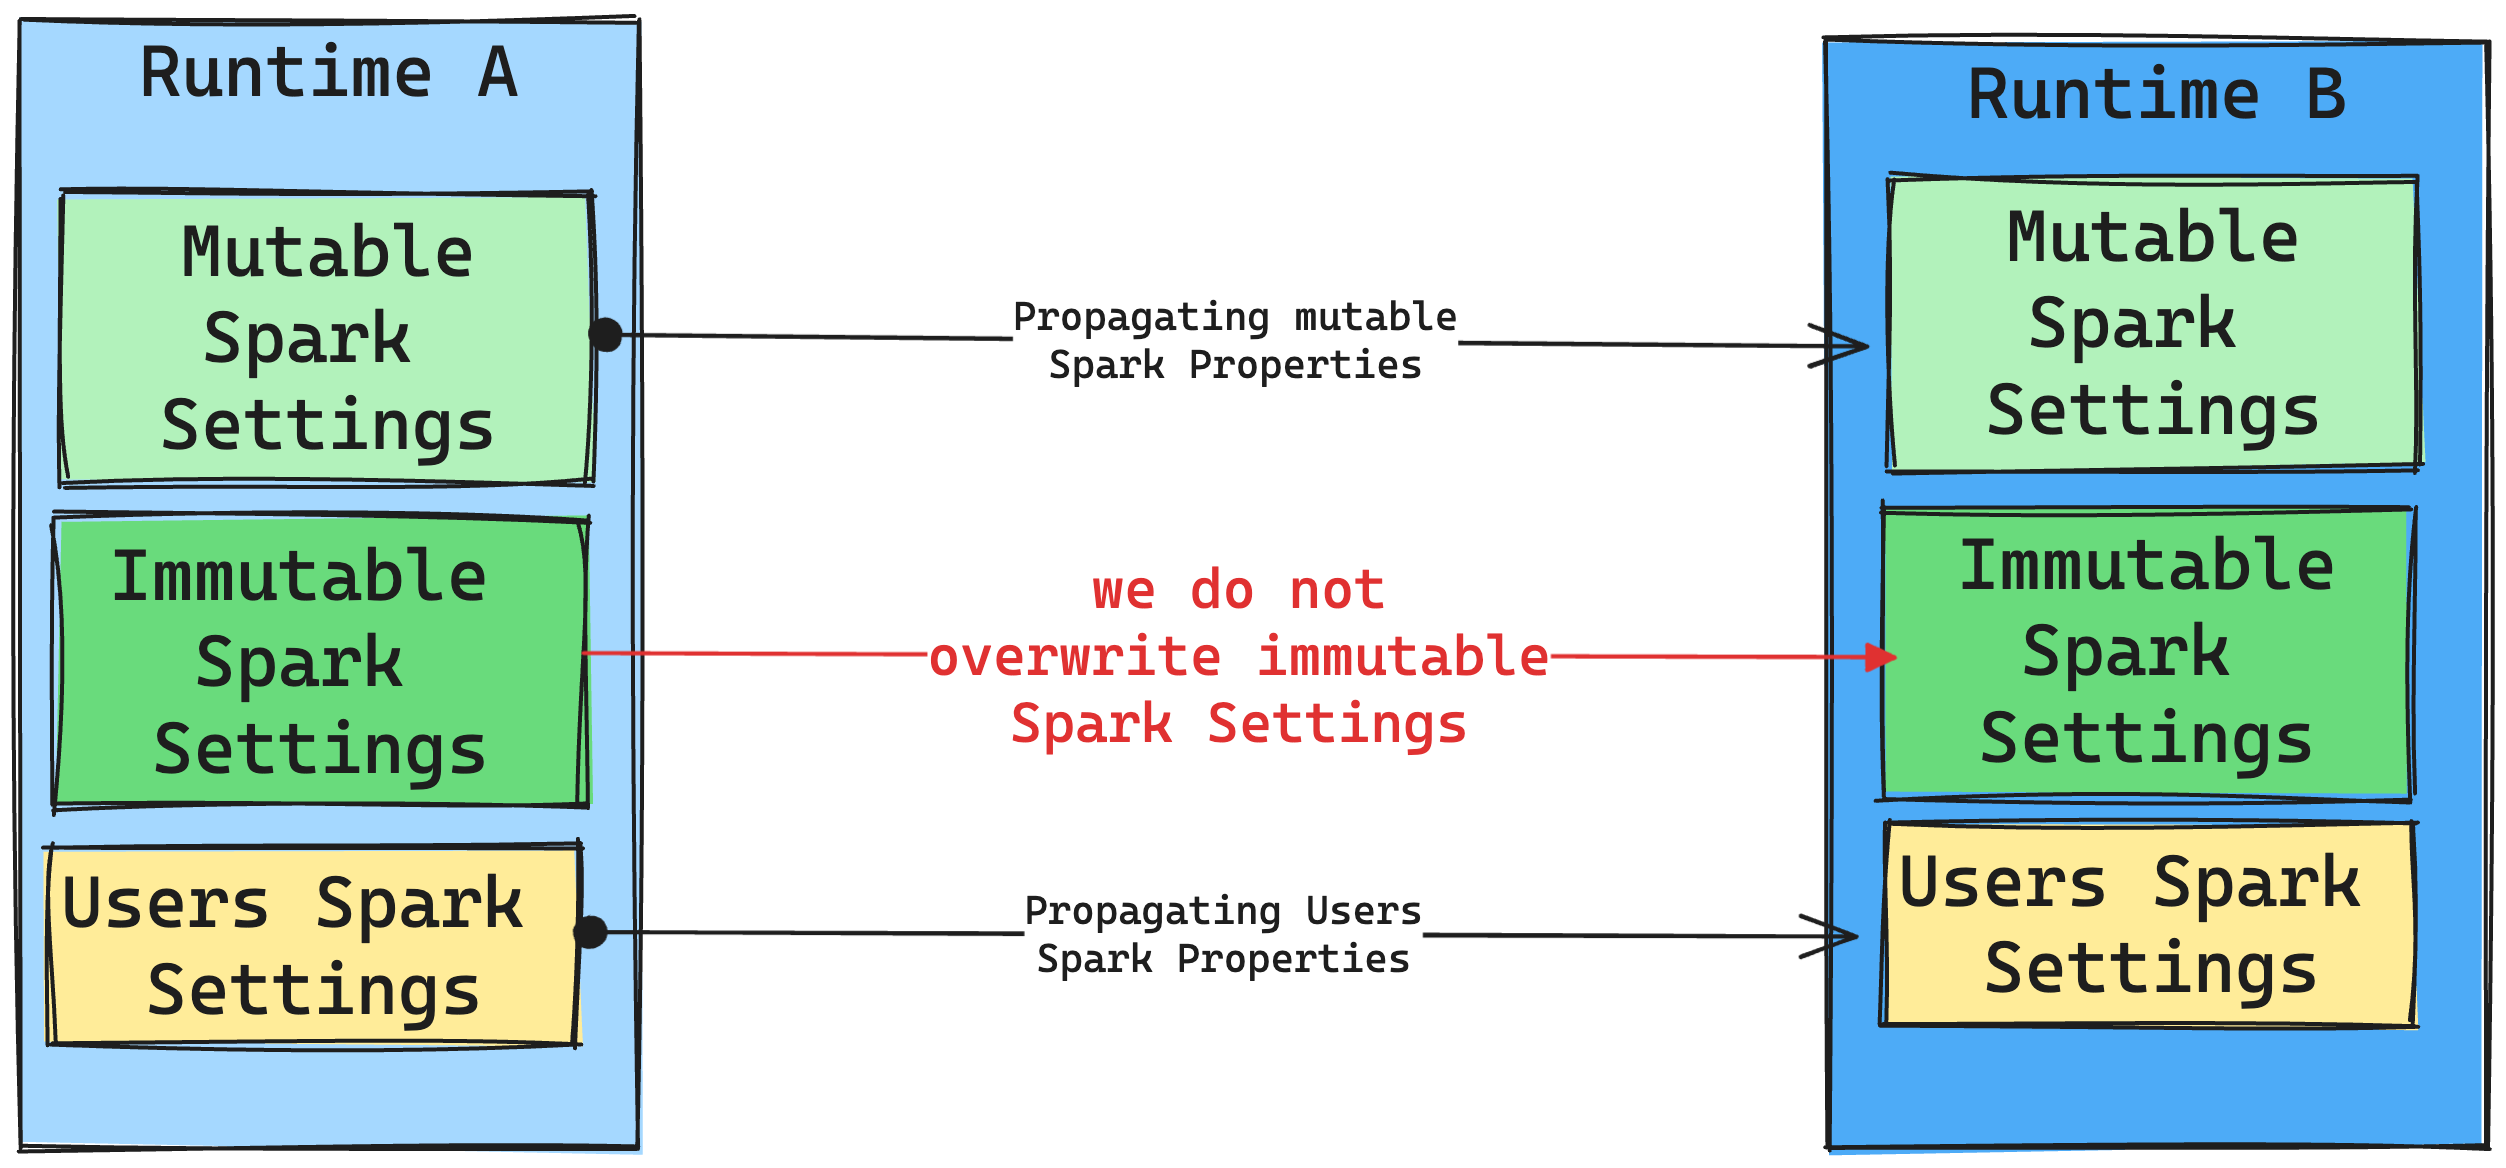 Alteração do runtime nas configurações do Spark.